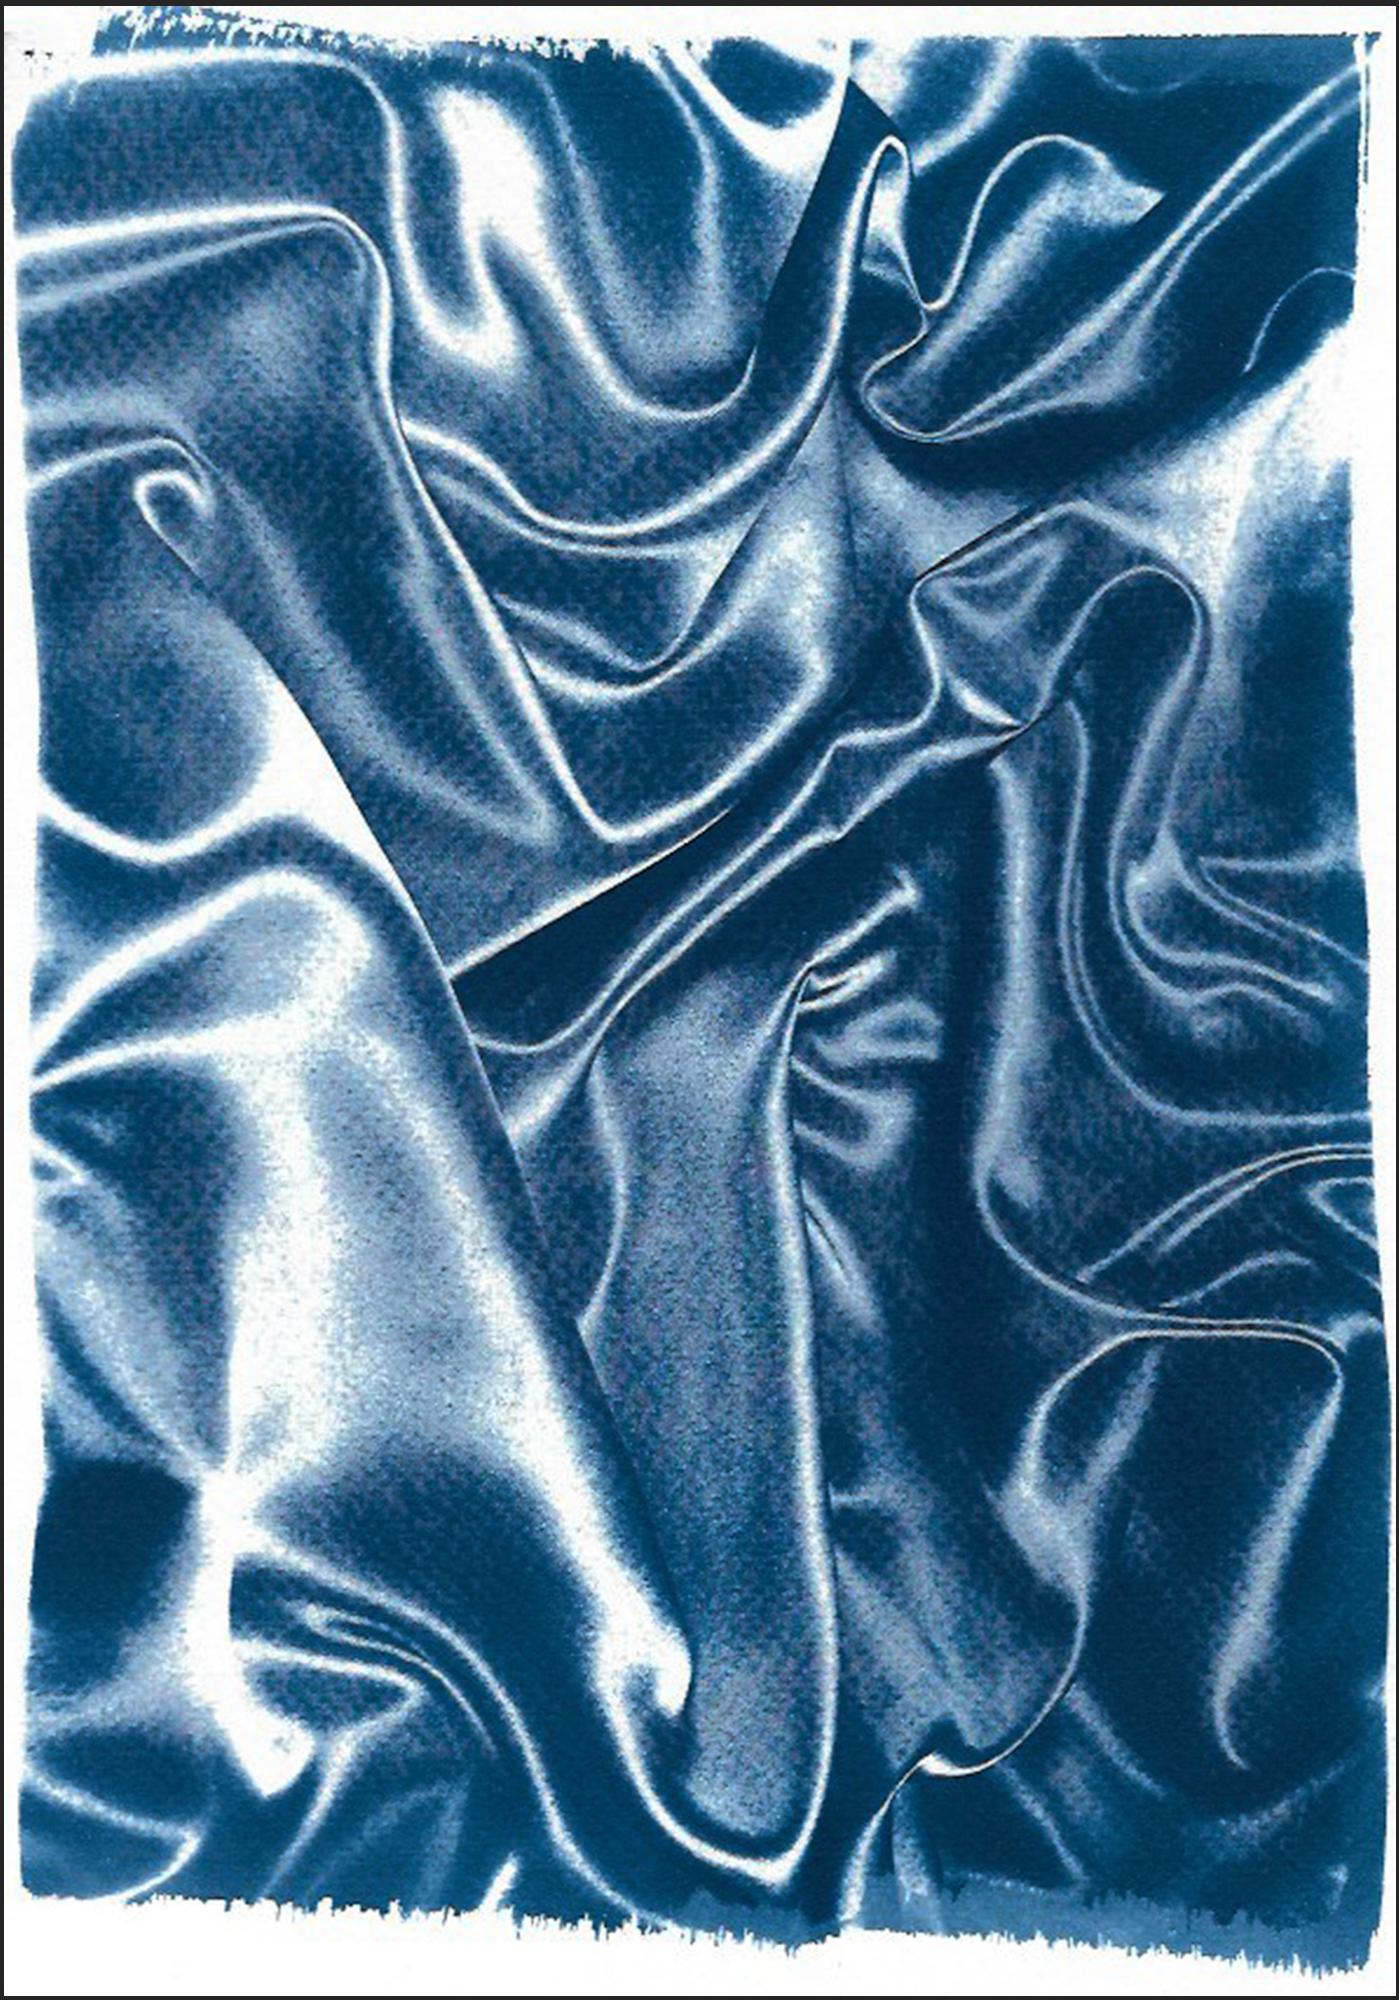 Kind of Cyan Abstract Painting – Klassische blaue Seidenbewegung, abstrakte Stoff Gesten, zeitgenössische Cyanotypie 